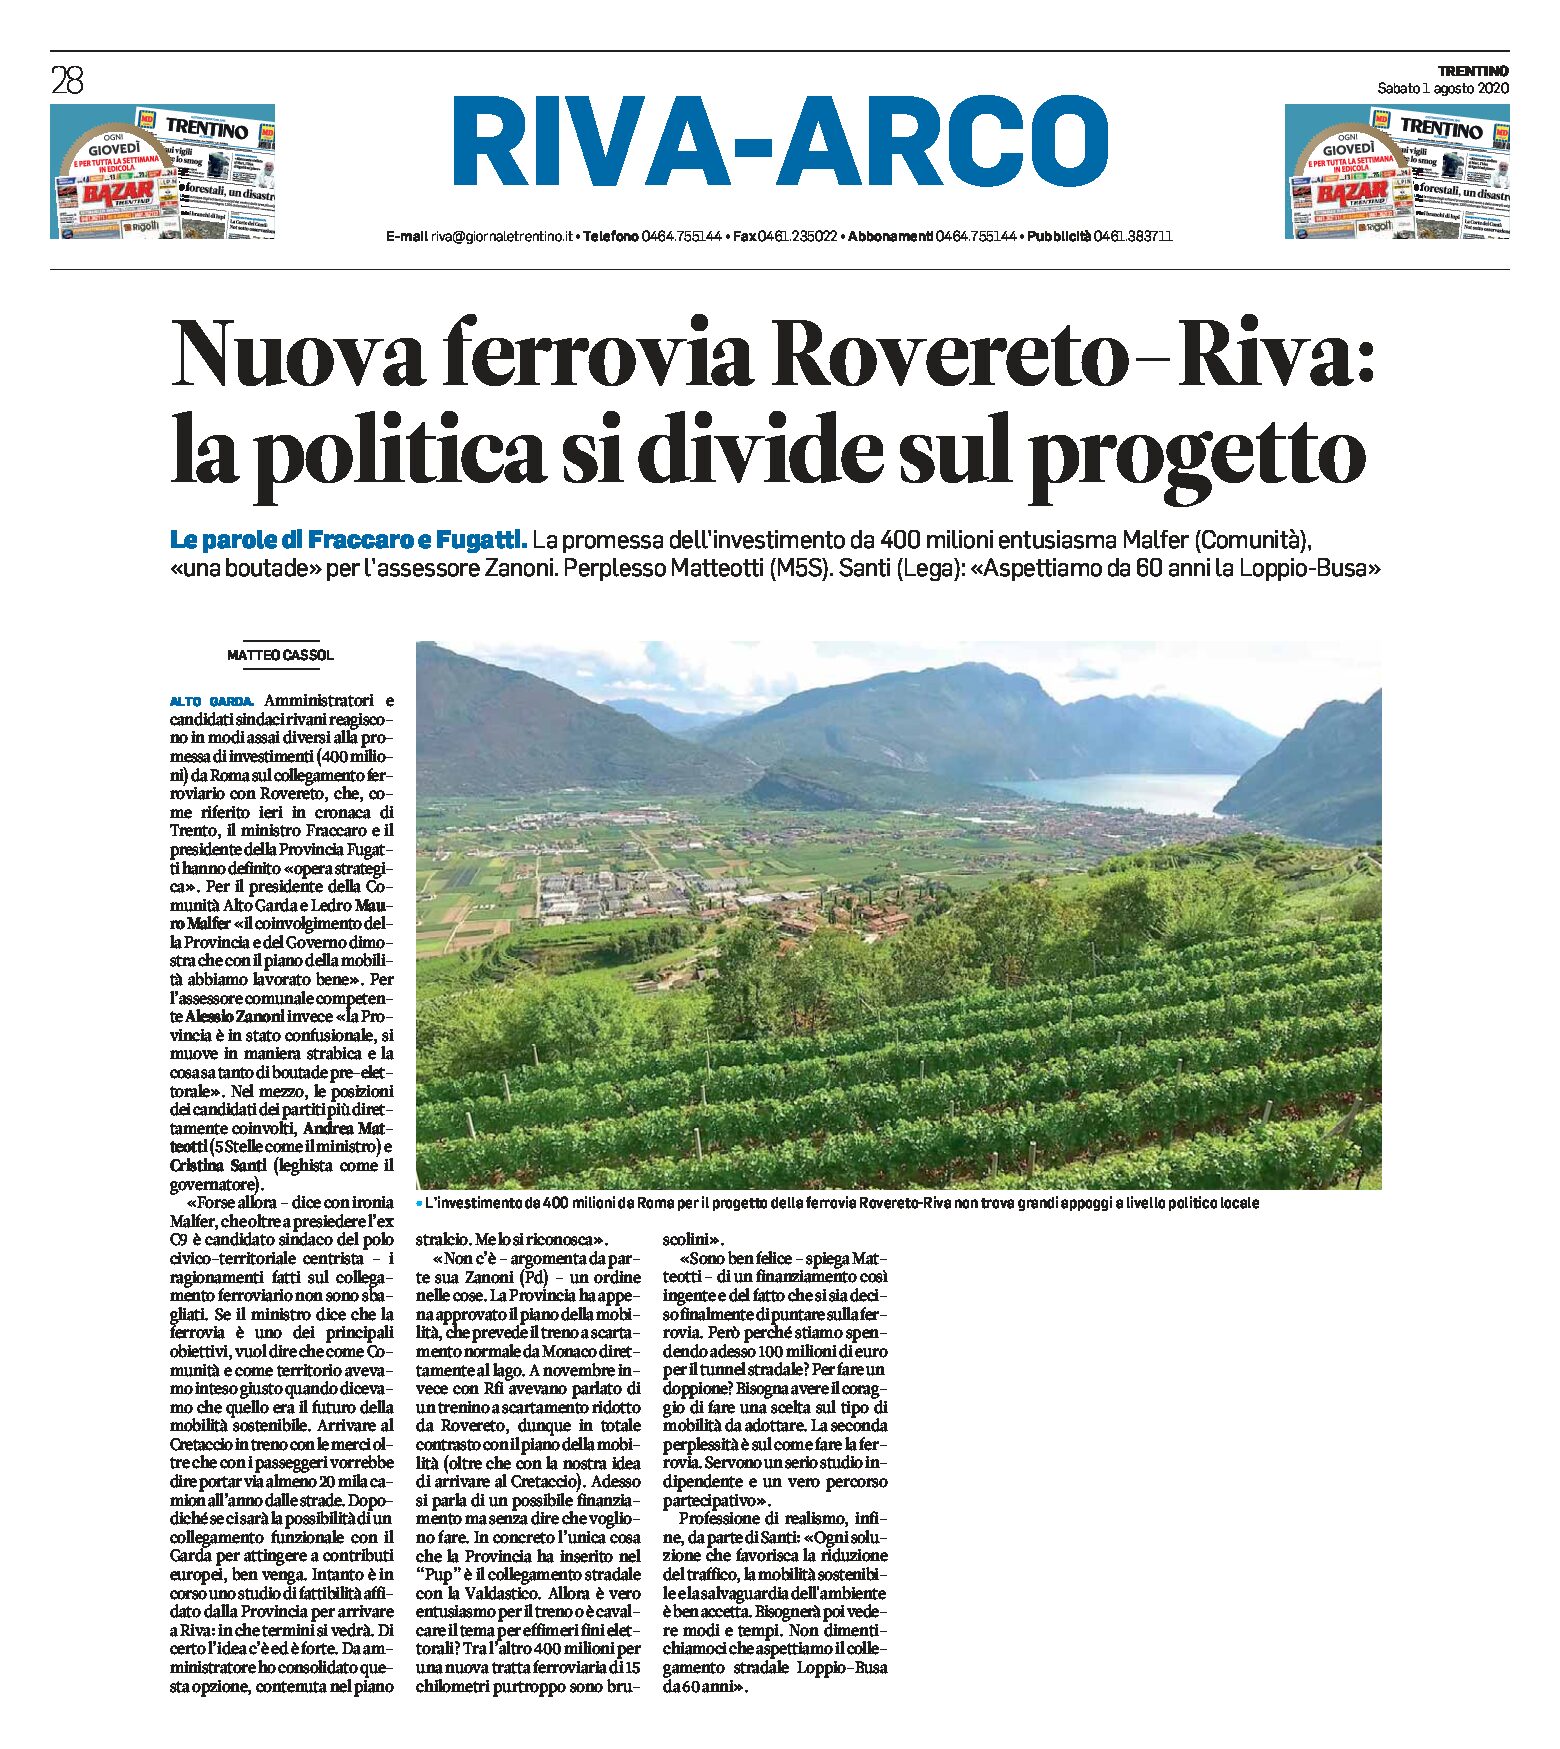 Rovereto-Riva: nuova ferrovia, la politica si divide sul progetto